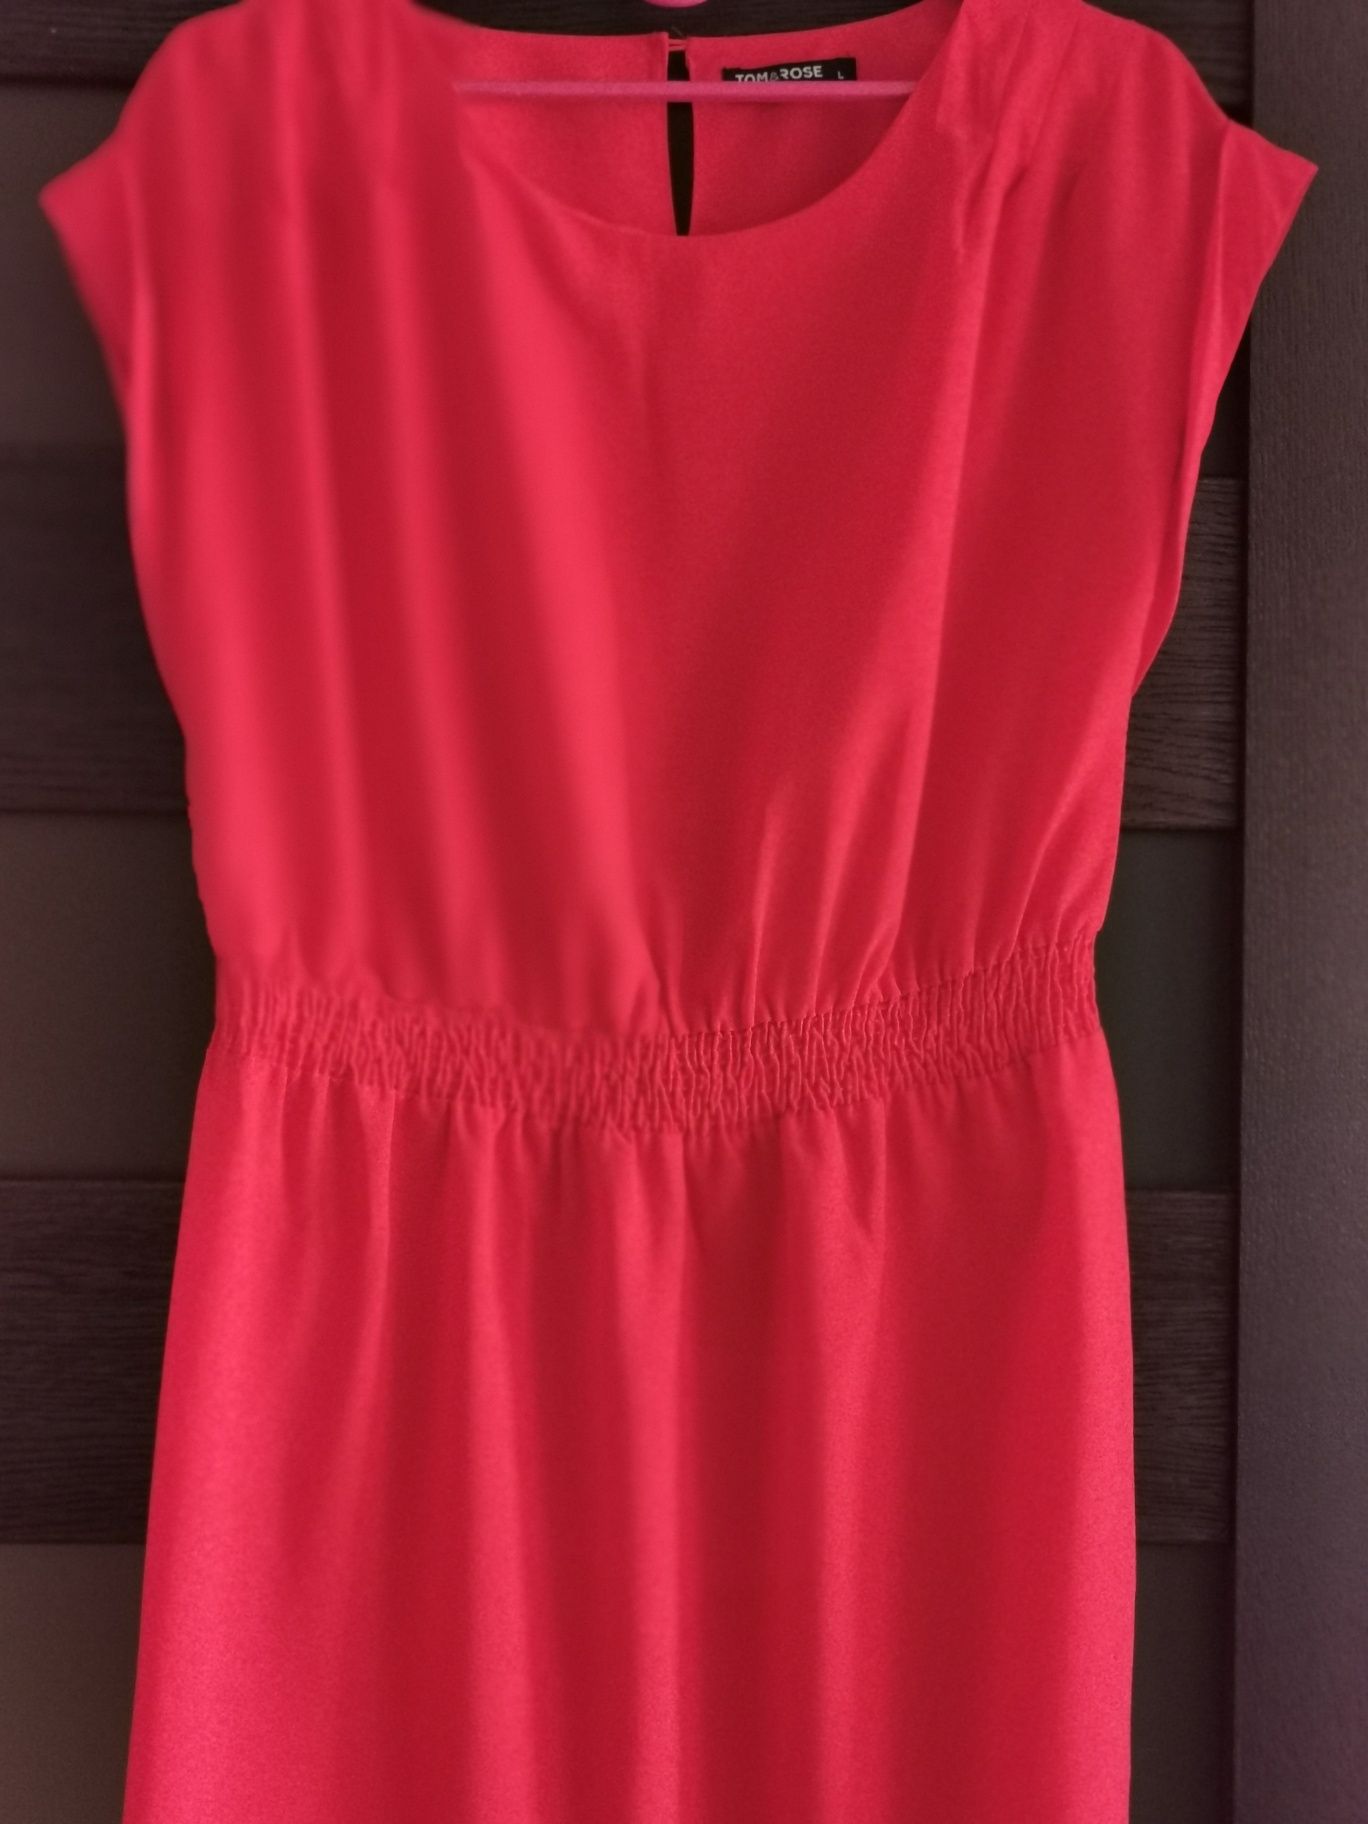 Czerwona sukienka tom&rose rozmiar L